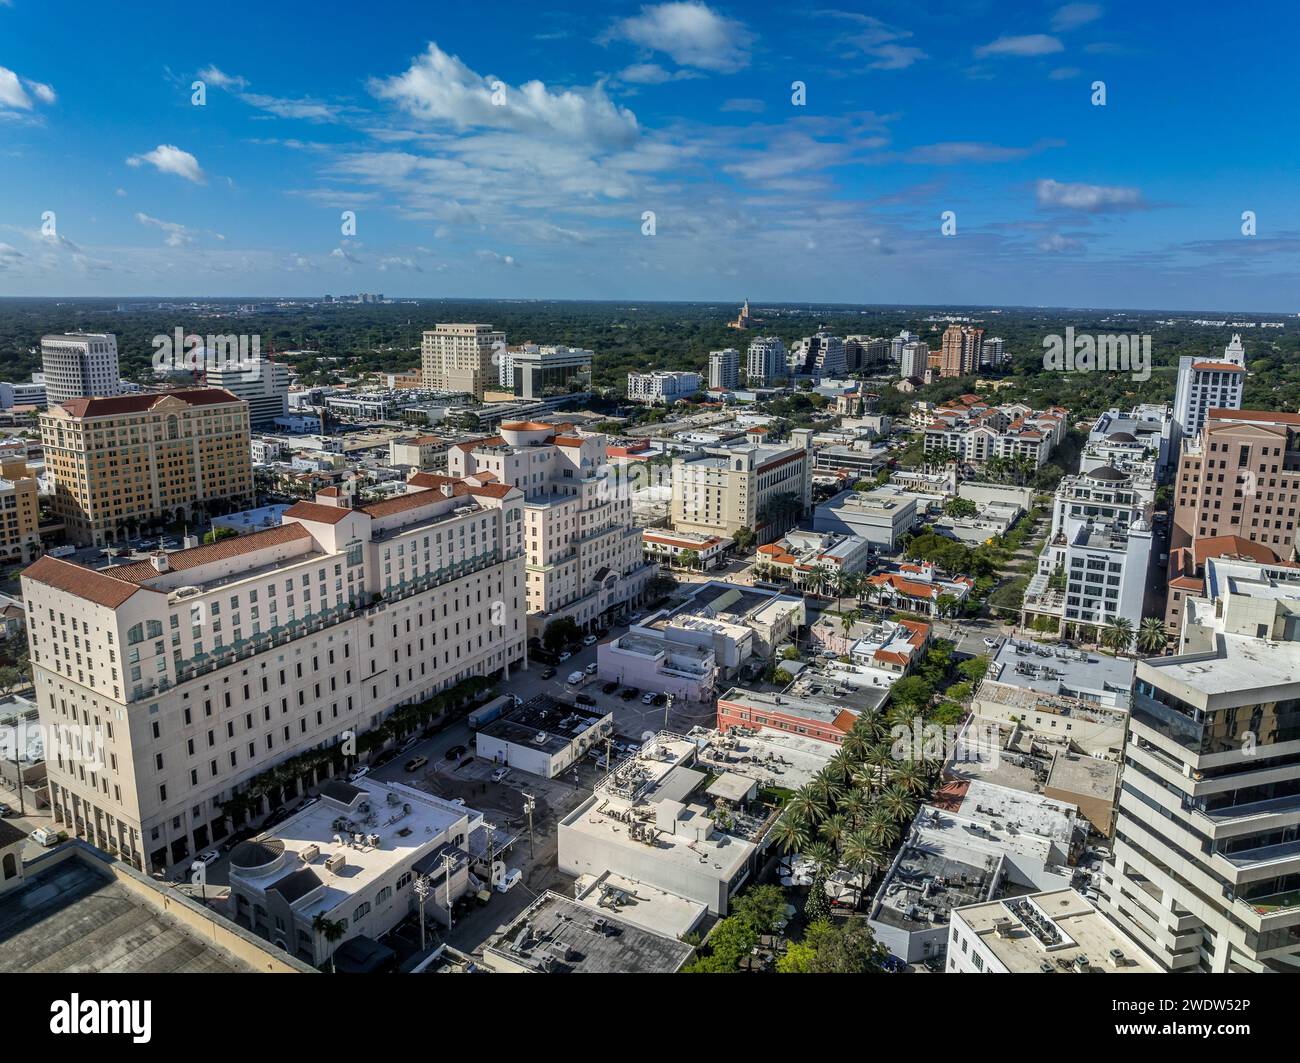 Vue aérienne du centre-ville de Coral Gables à Miami Floride une communauté planifiée sur le thème méditerranéen avec un caractère riche. Style néo-méditerranéen bu Banque D'Images